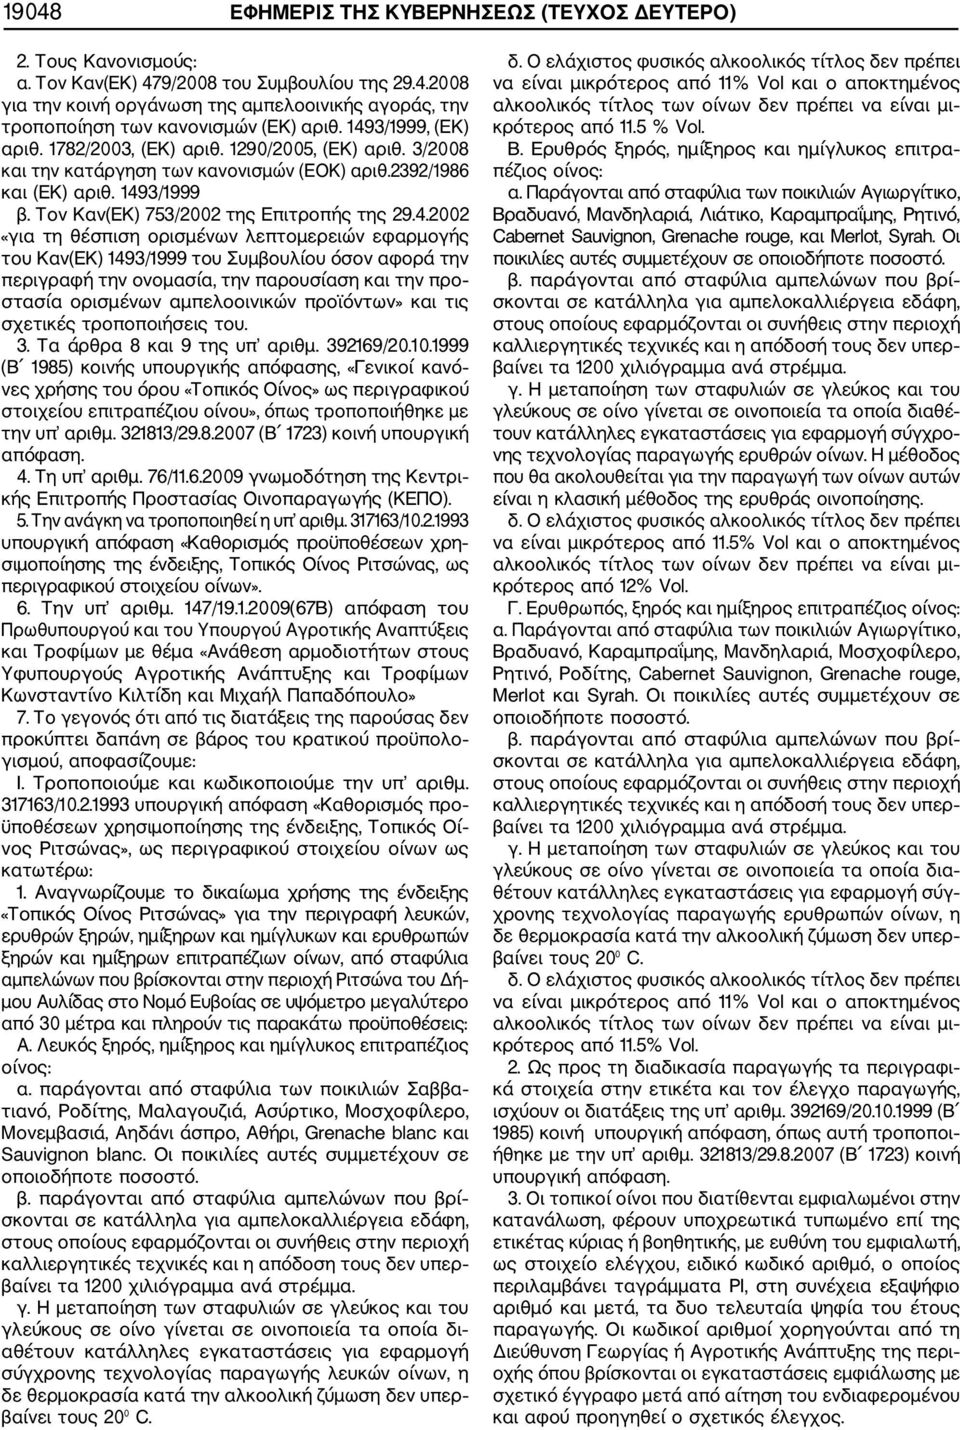 29.4.2002 «για τη θέσπιση ορισμένων λεπτομερειών εφαρμογής του Καν(ΕΚ) 1493/1999 του Συμβουλίου όσον αφορά την περιγραφή την ονομασία, την παρουσίαση και την προ στασία ορισμένων αμπελοοινικών